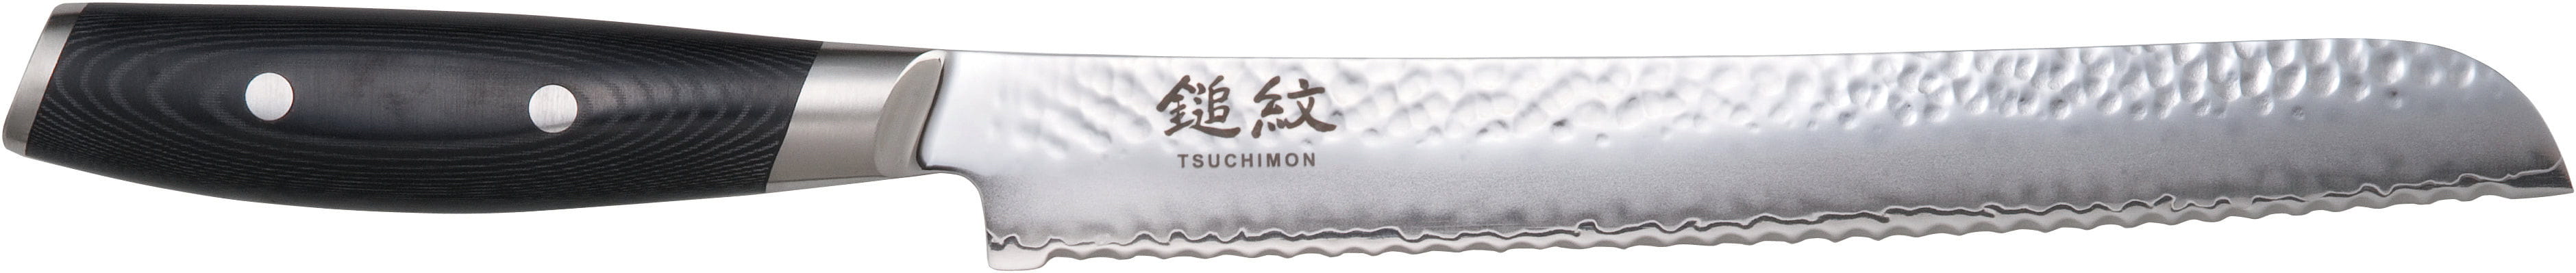 Yaxell Tsuchimon brödkniv, 23 cm